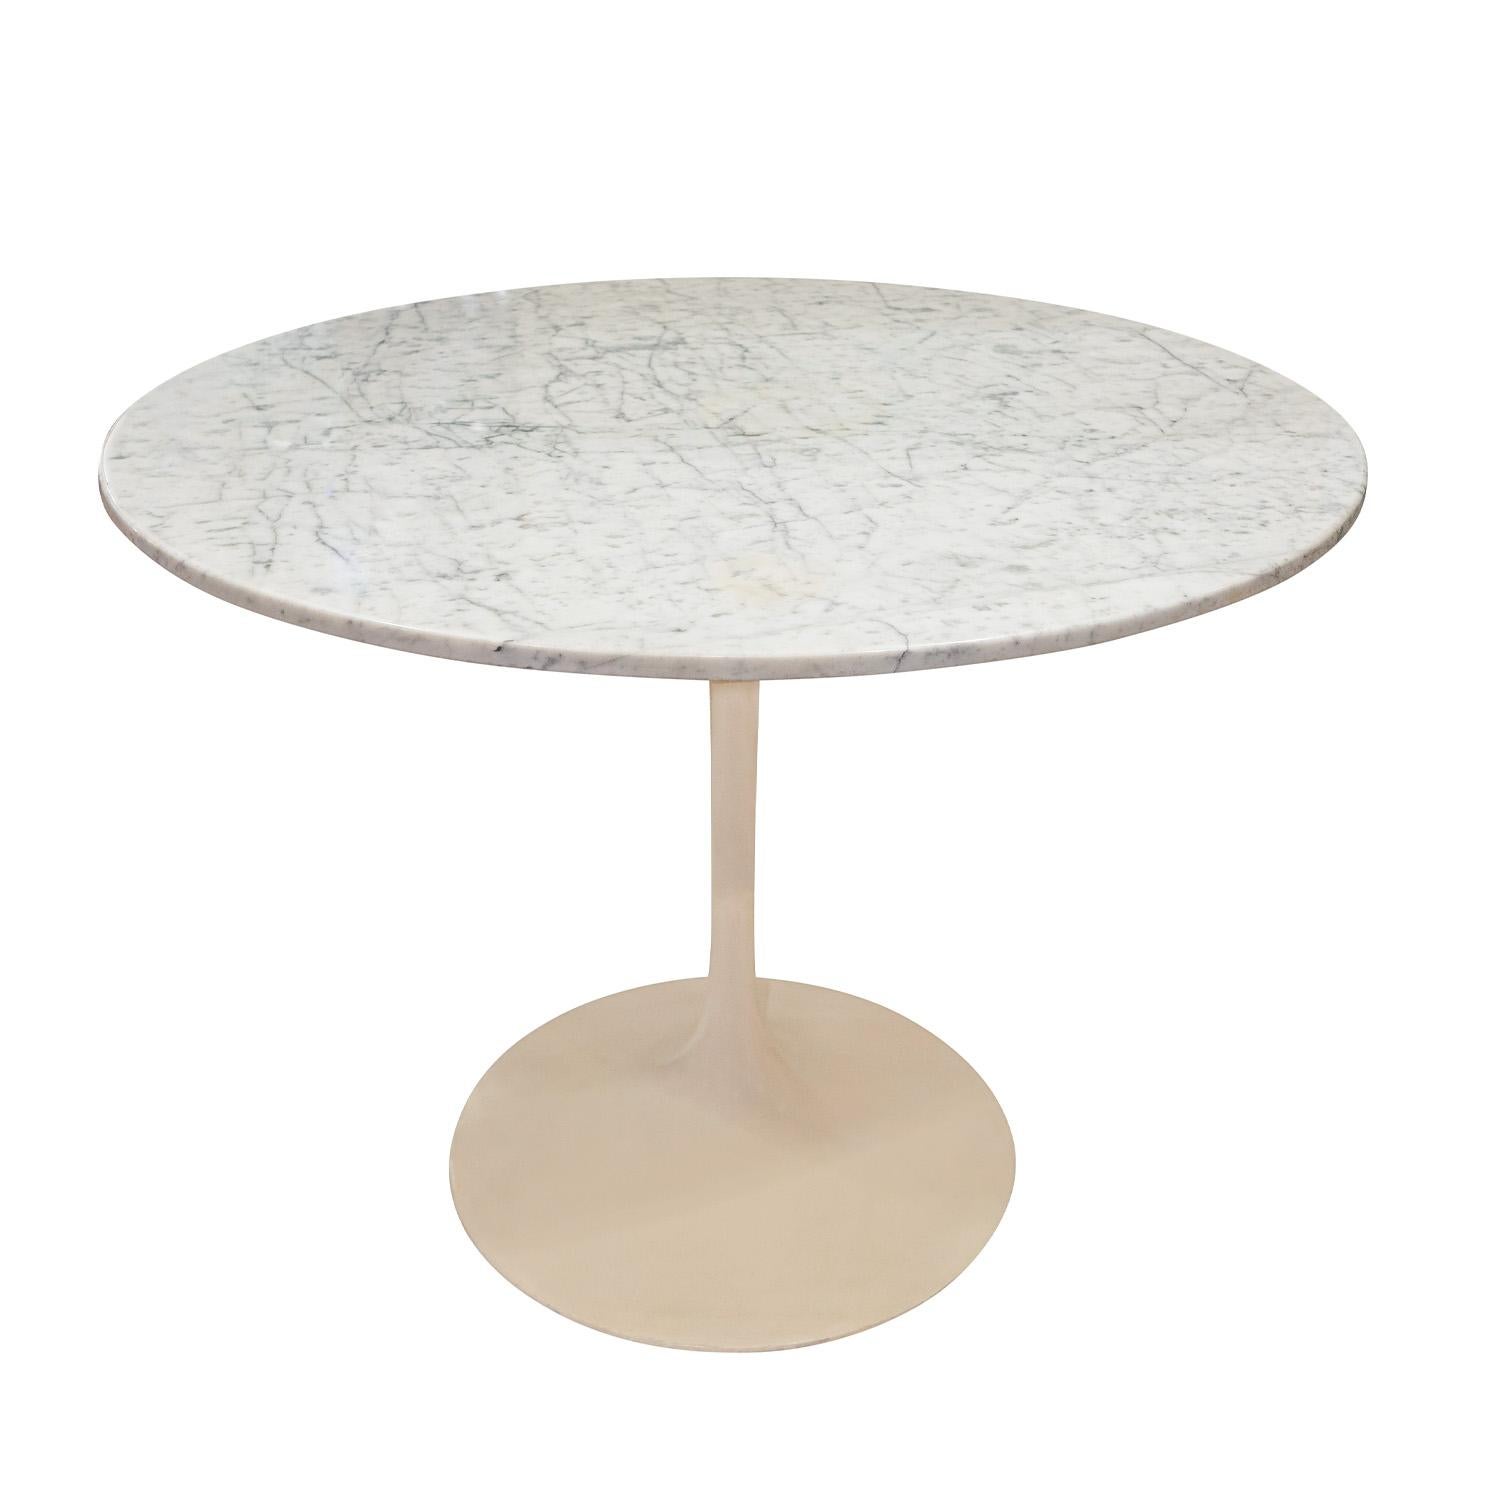 Ess-/Spieltisch im Tulpenstil von Saarinen mit geformtem und lackiertem Stahlsockel und polierter Marmorplatte, Italien 1990er Jahre.  Die gemaserte Marmorplatte ist atemberaubend.